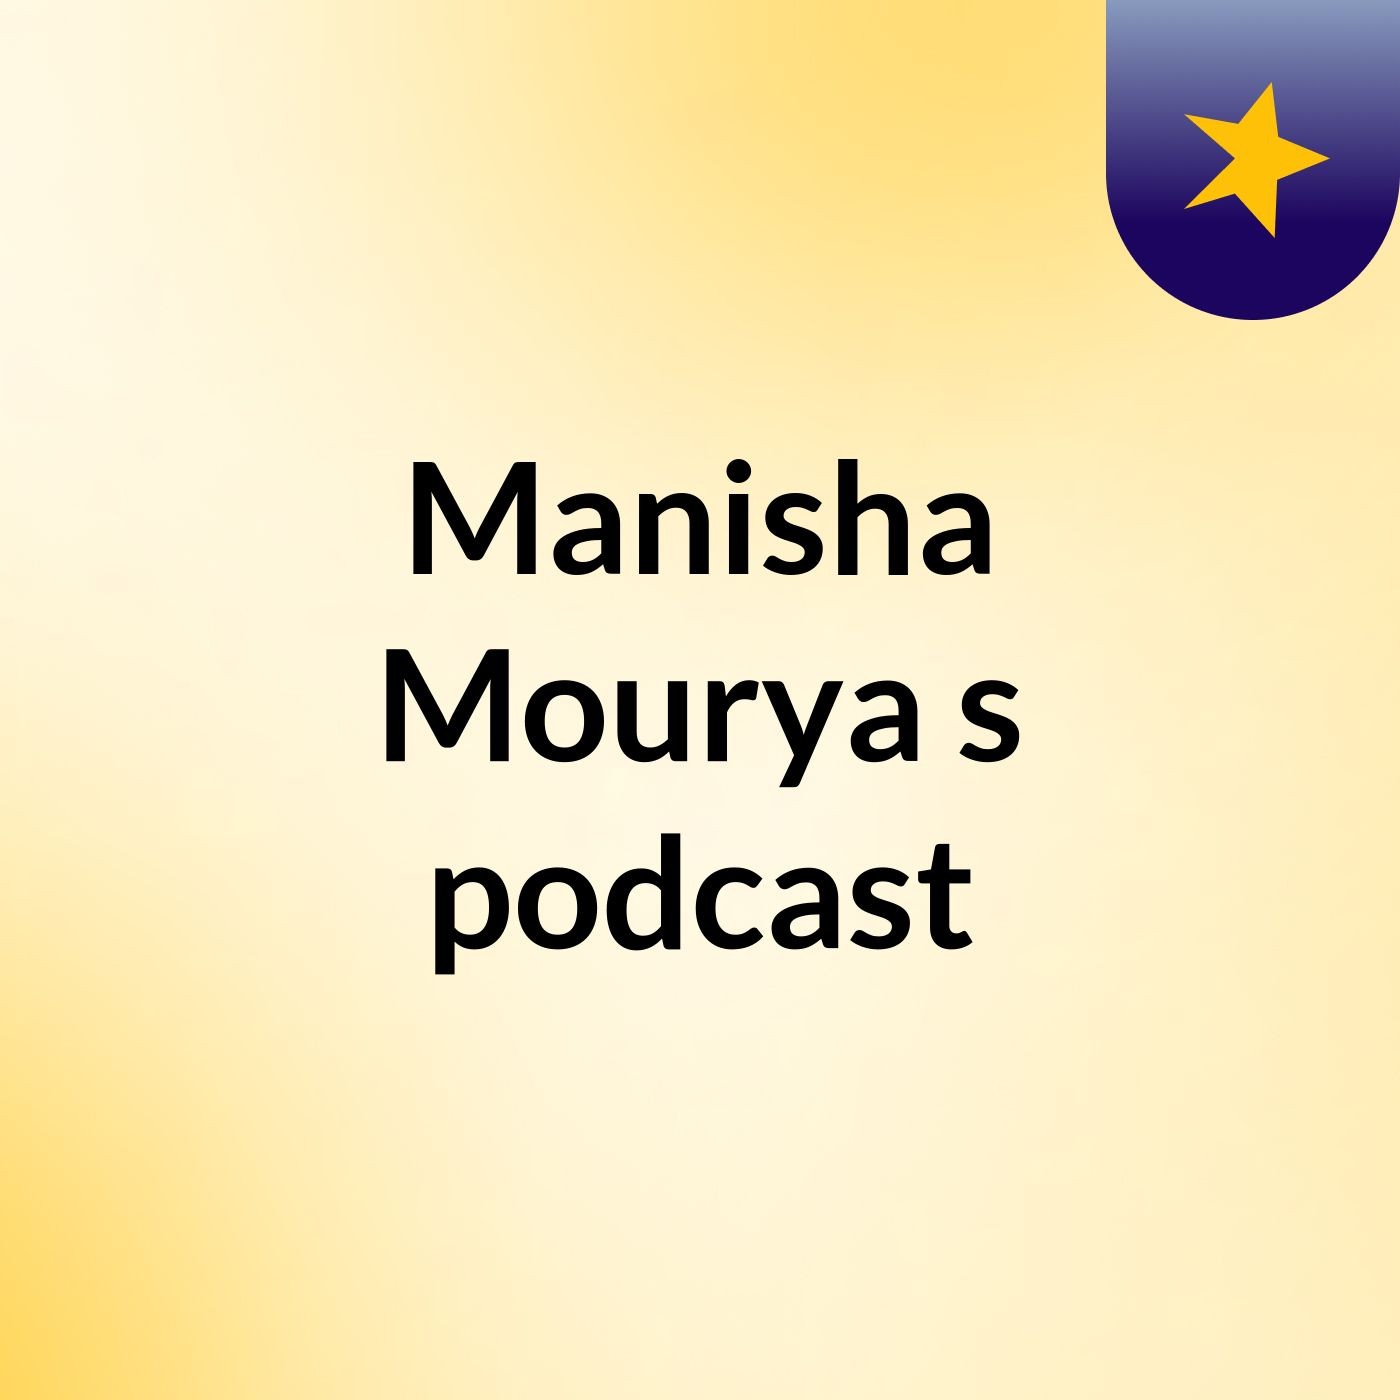 Episode 2 - Manisha Mourya's podcast